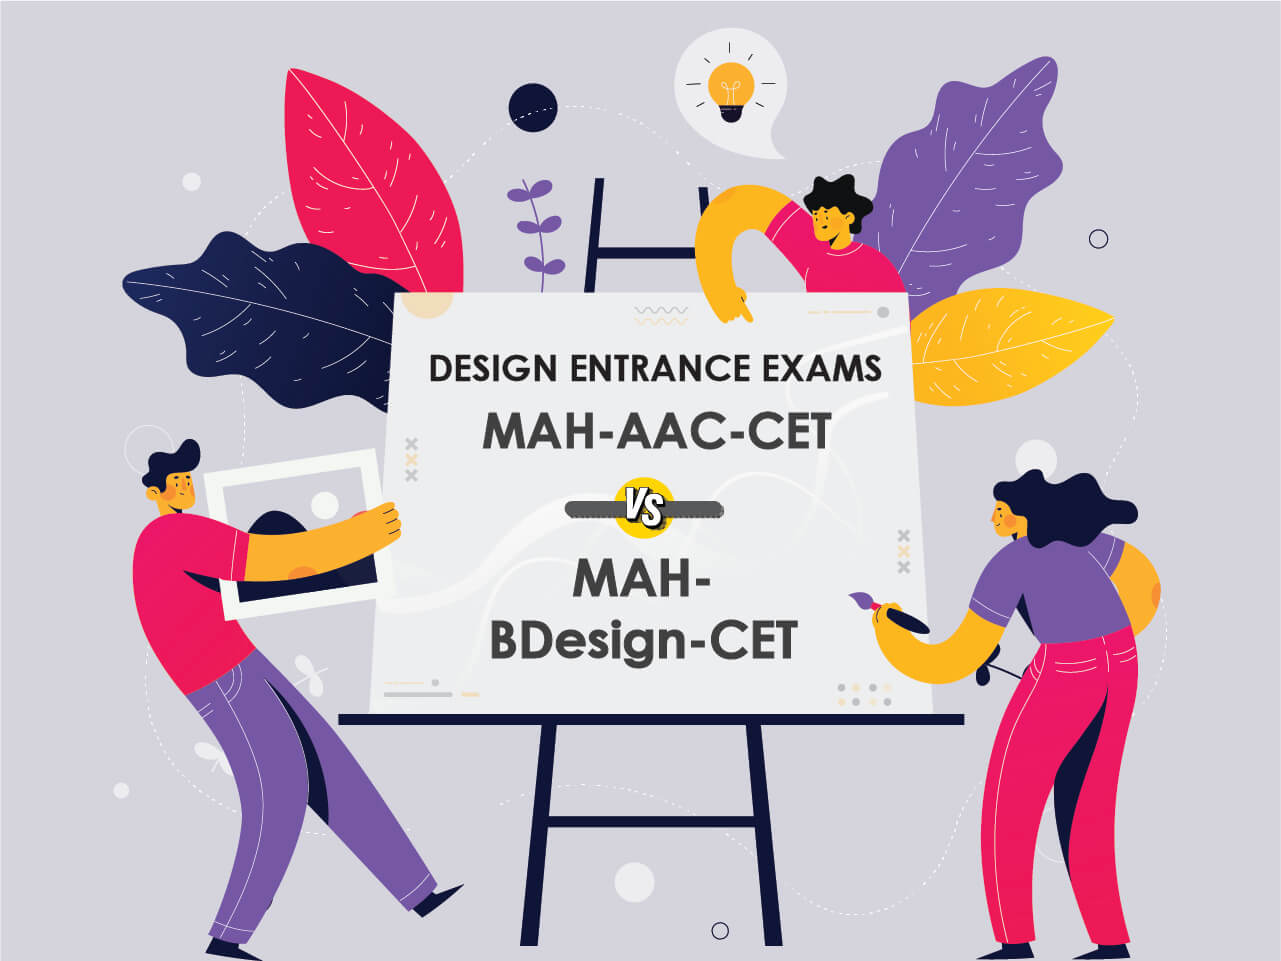 MAH-AAC-CET vs. MAH-BDesign-CET